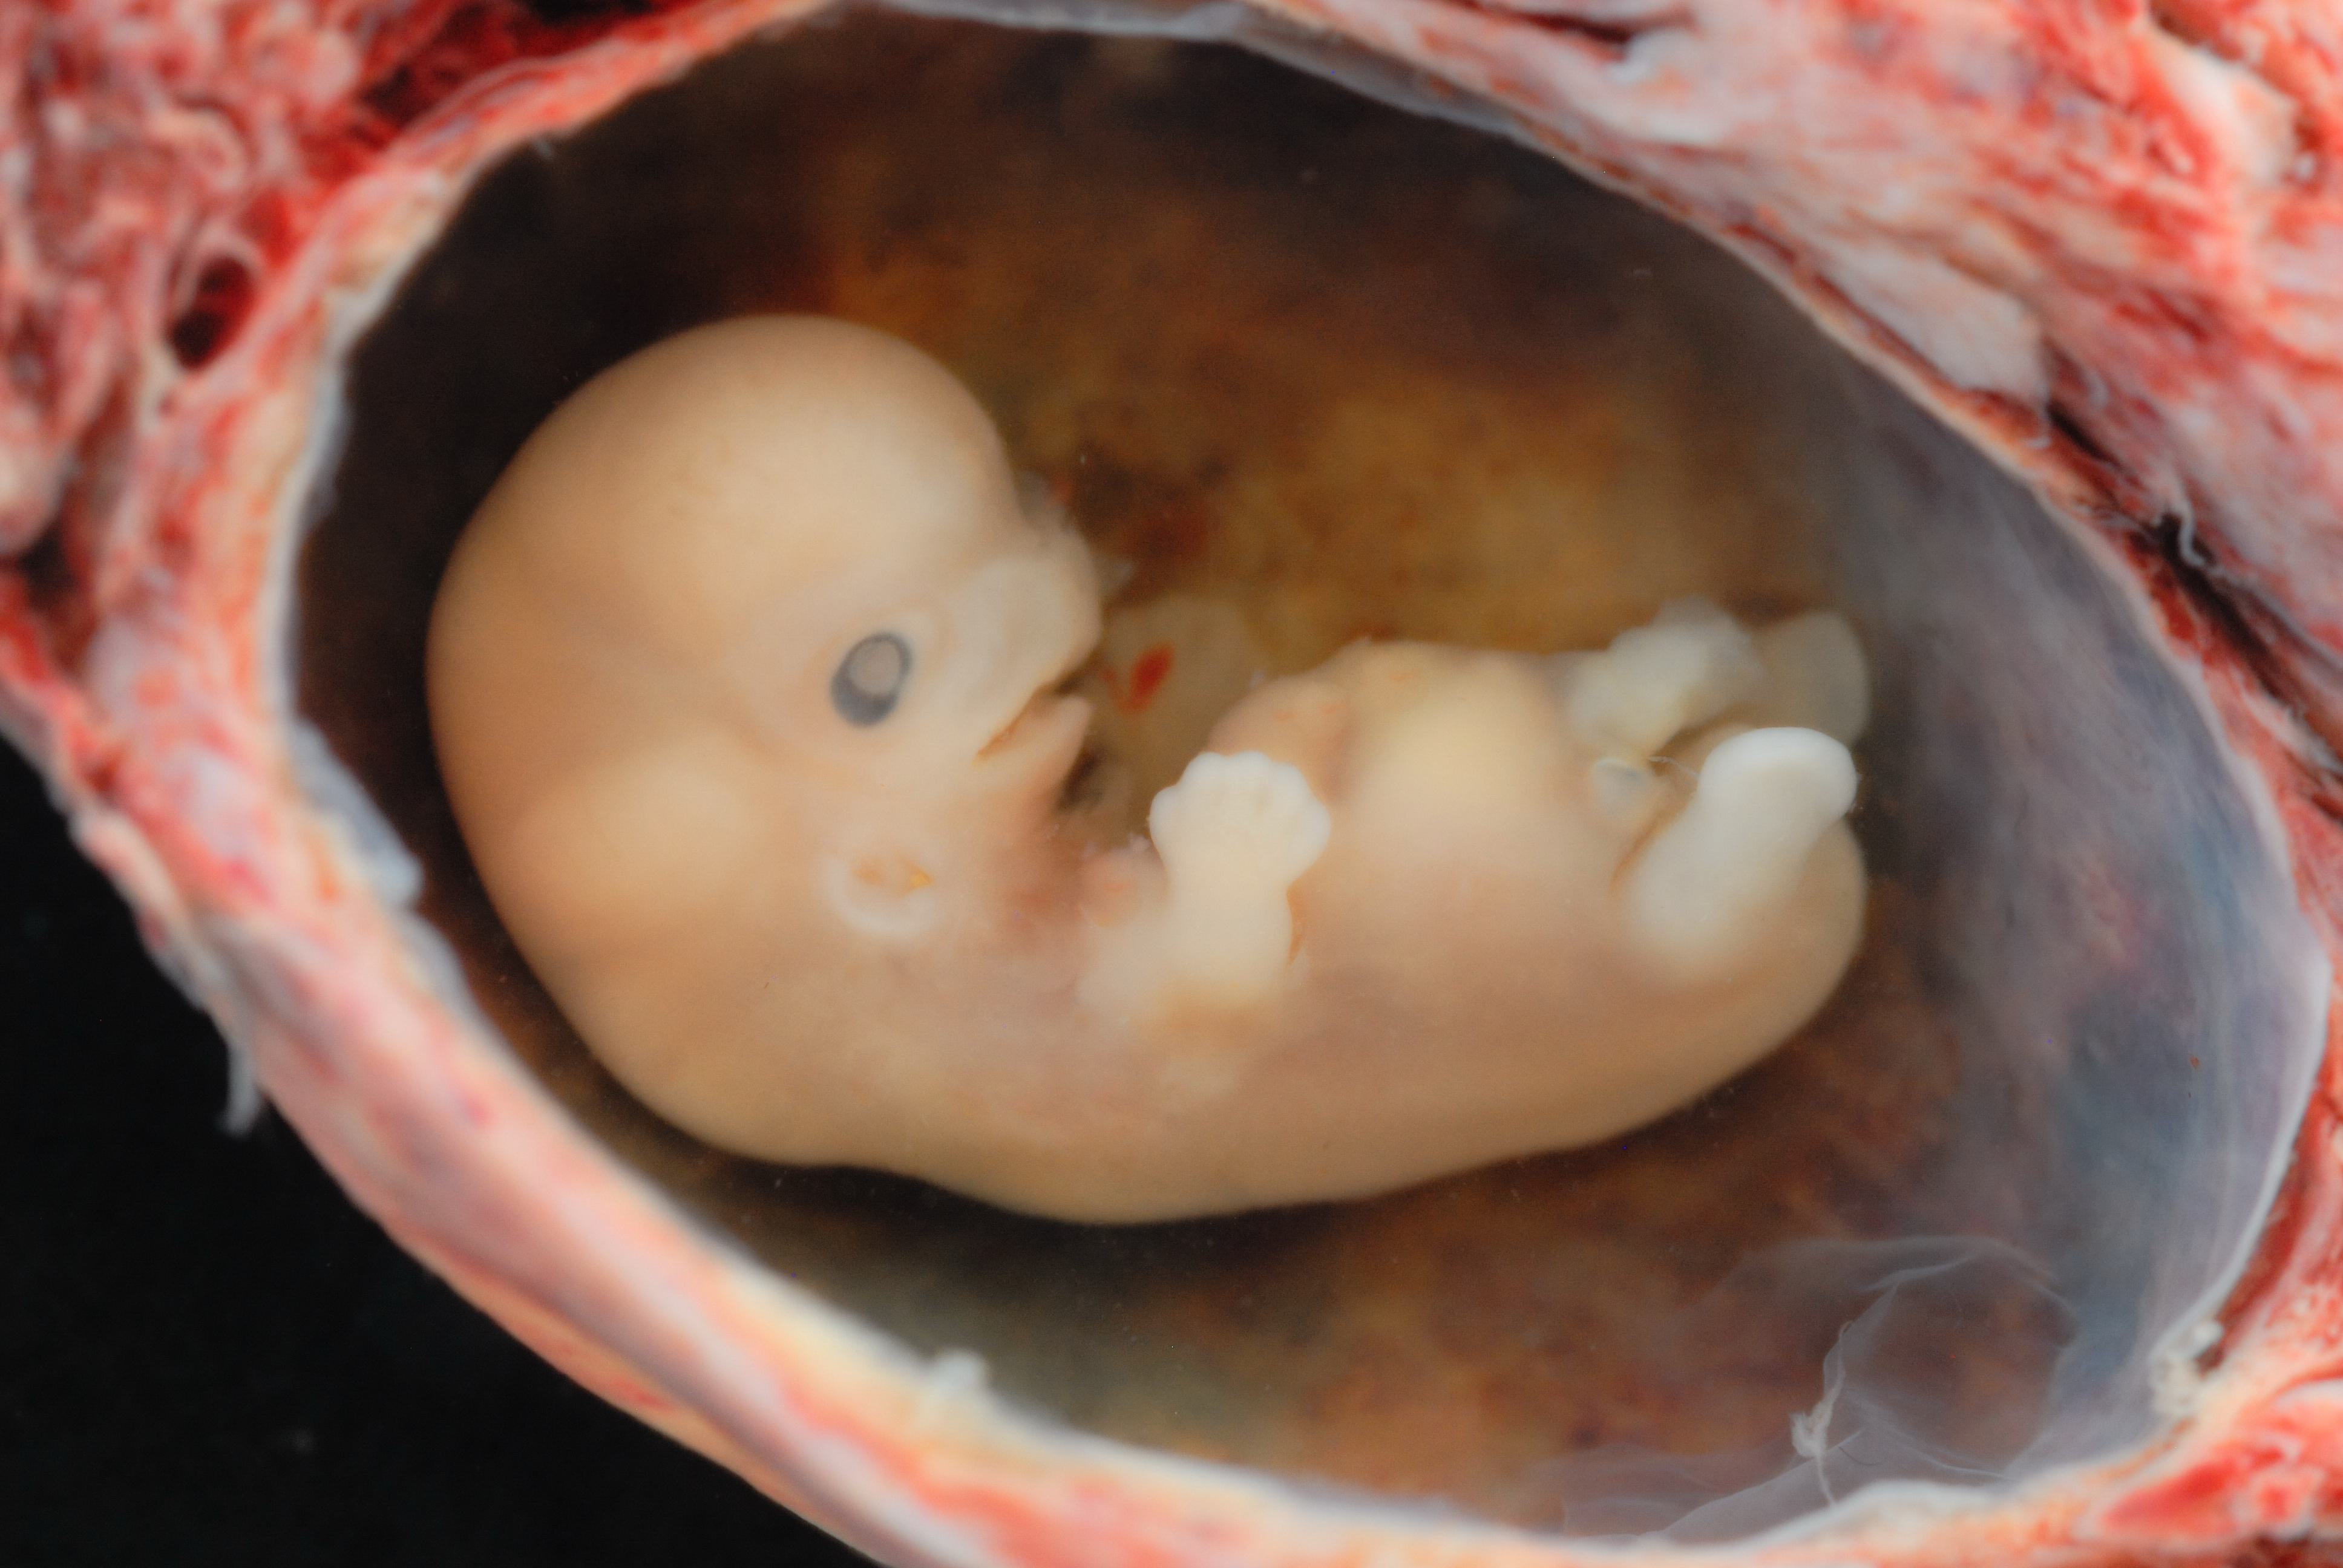 Experimenteren met embryo's? Ethisch onverantwoord